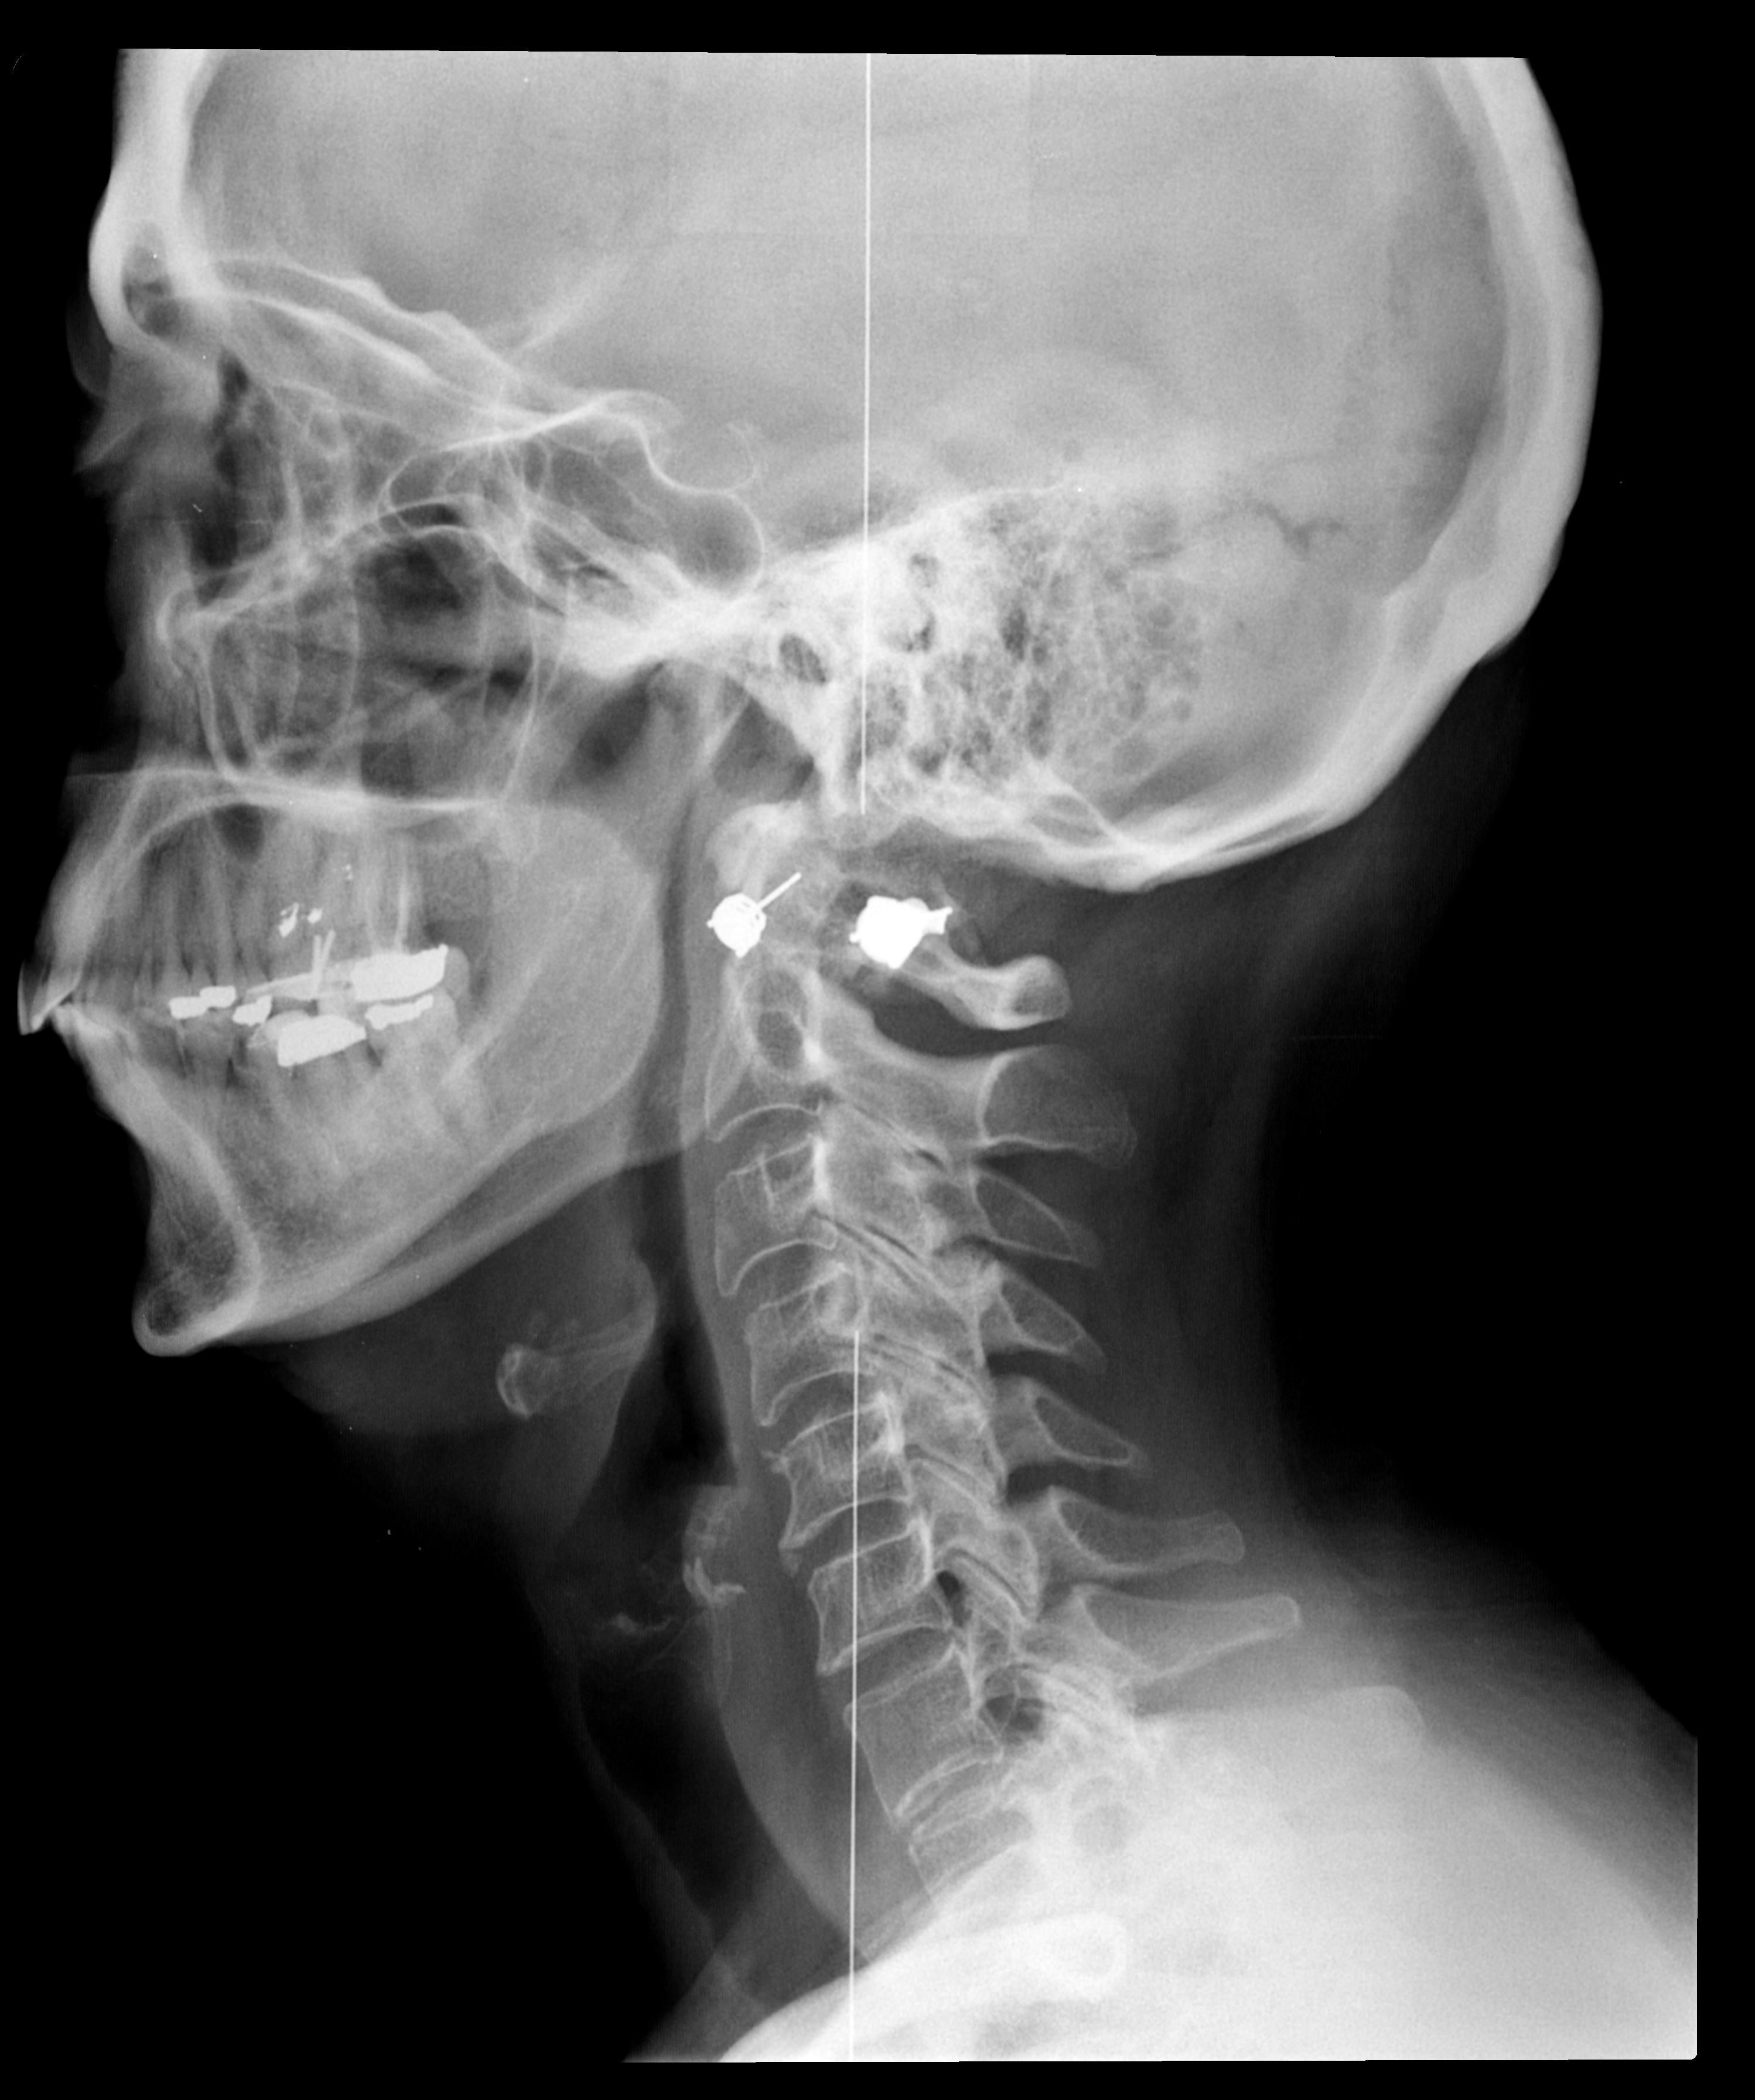 عکس رادیولوژی سیاه سفید ناحیه سر و گردن برای تحقیق